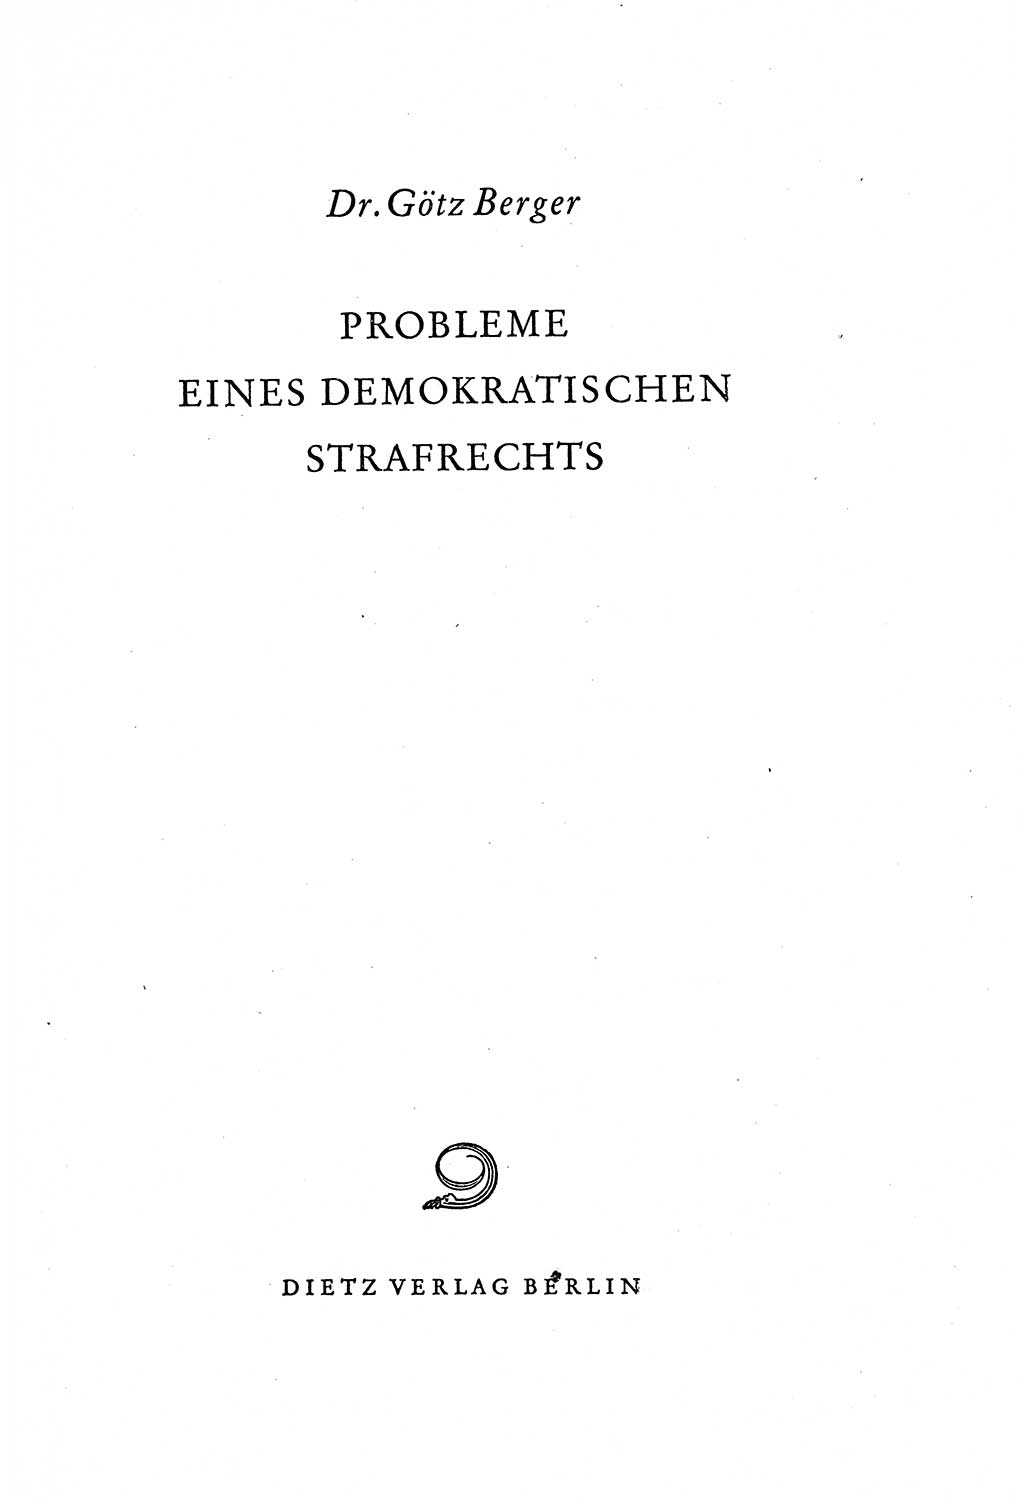 Probleme eines demokratischen Strafrechts [Sowjetische Besatzungszone (SBZ) Deutschlands] 1949, Seite 3 (Probl. Strafr. SBZ Dtl. 1949, S. 3)